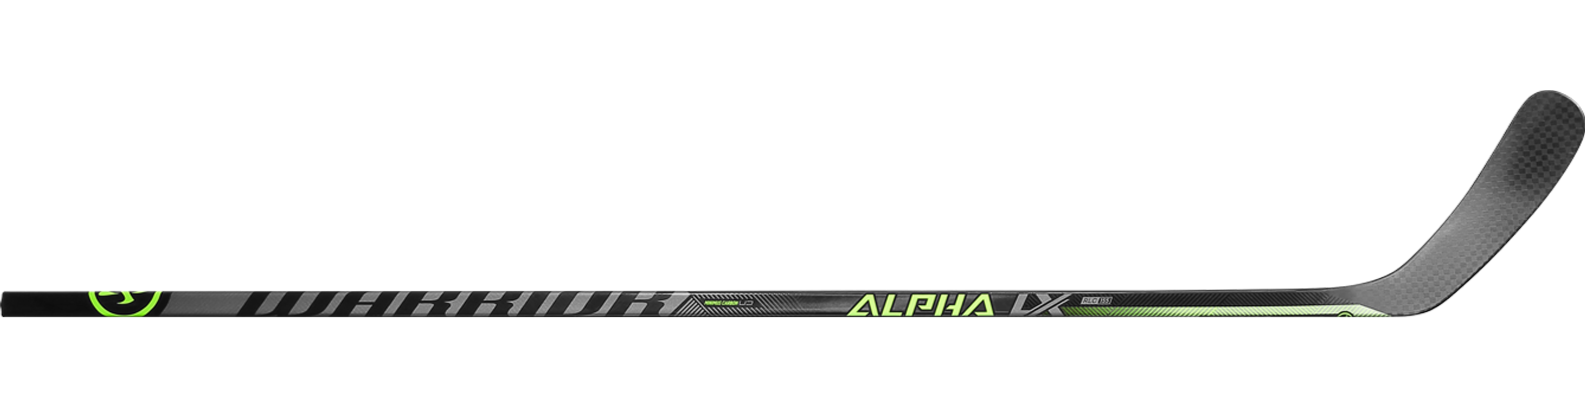 Warrior Alpha LX 20 Bâton de Hockey Intermédiaire